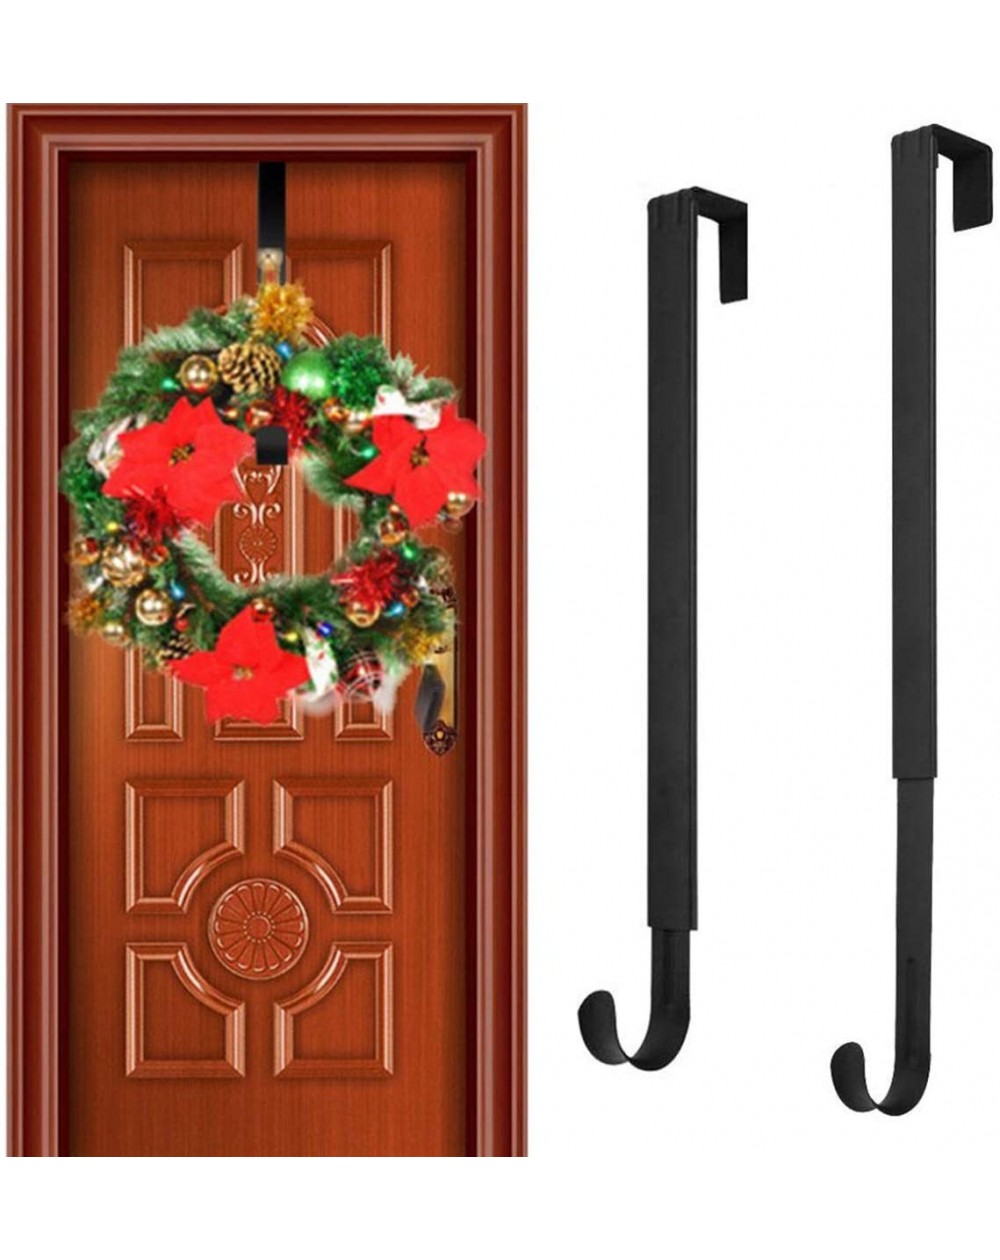 Wreath Hangers 2 Pack Front Door Wreath Hanger Hook 15" - 24" Telescopic Adjustable Metal Over The Door Hook for Christmas an...